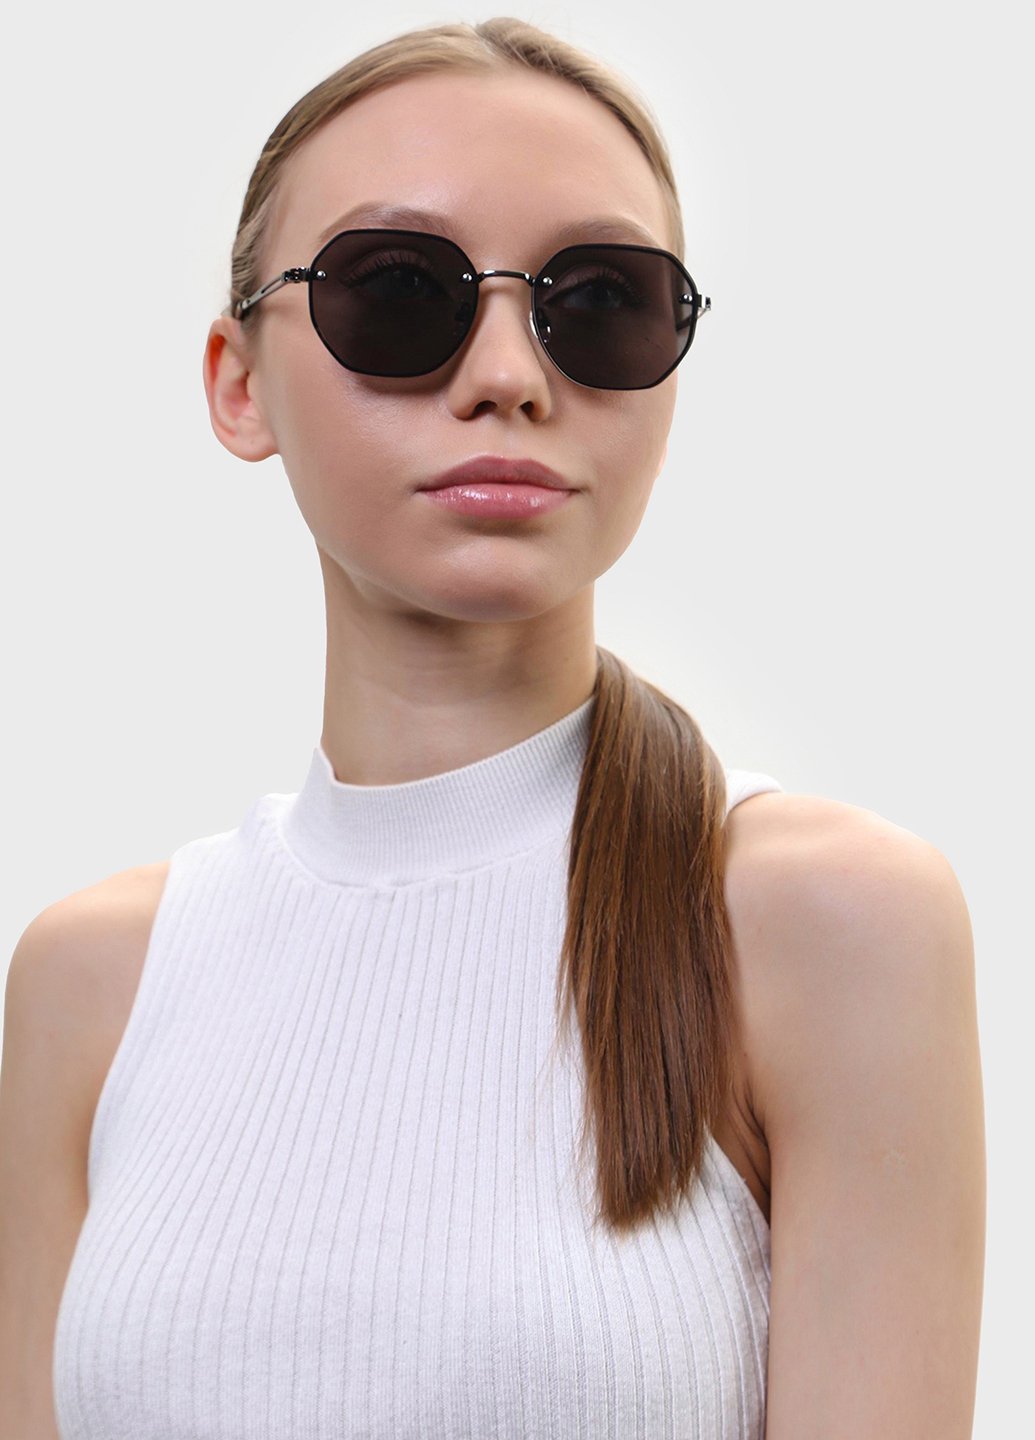 Купить Женские солнцезащитные очки Merlini с поляризацией S31817 117043 - Черный в интернет-магазине